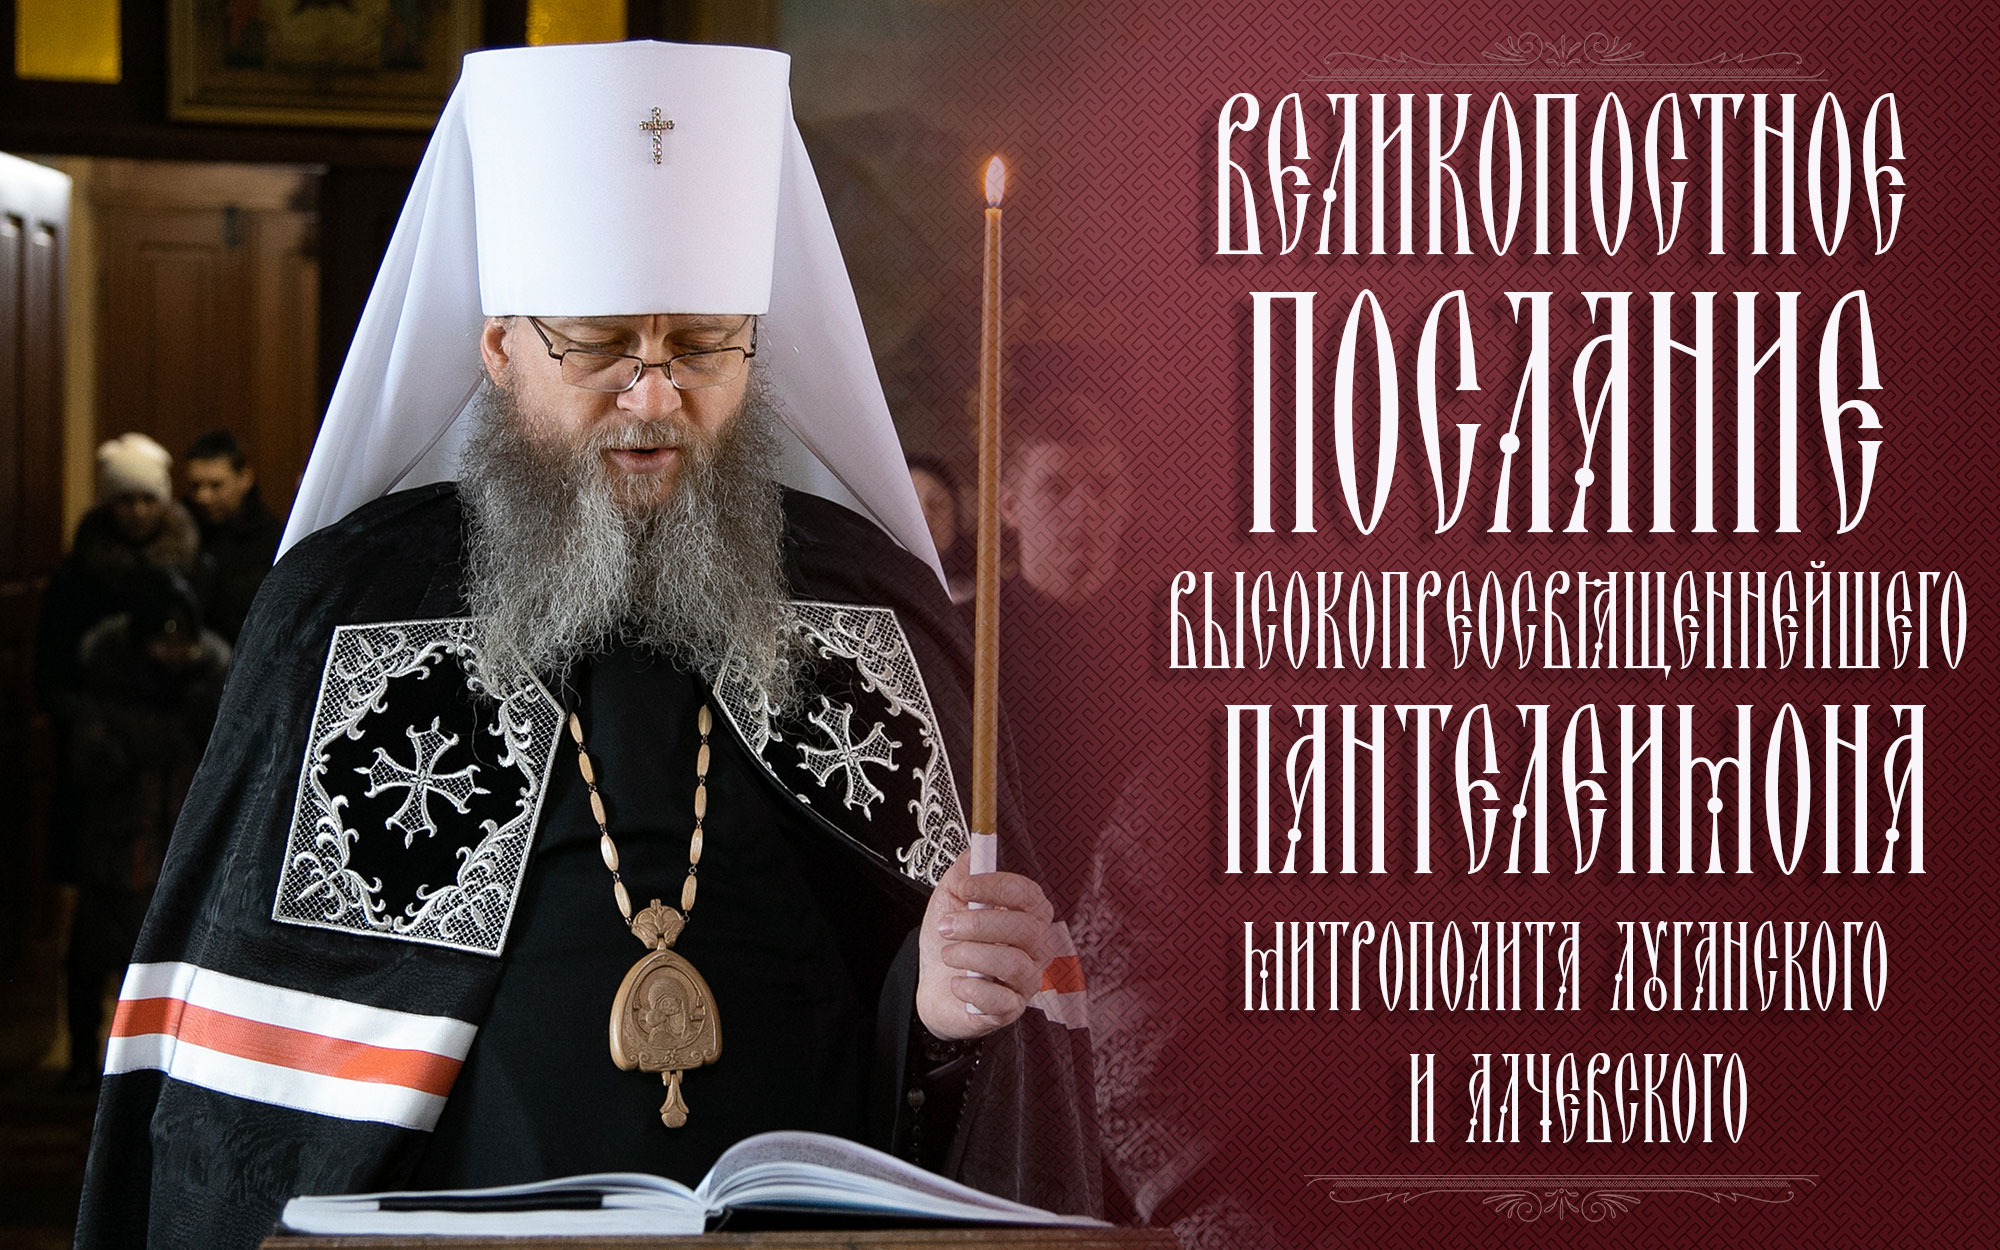 Вы сейчас просматриваете Великопостное послание Высокопреосвященнейшего митрополита  Луганского и Алчевского Пантелеимона